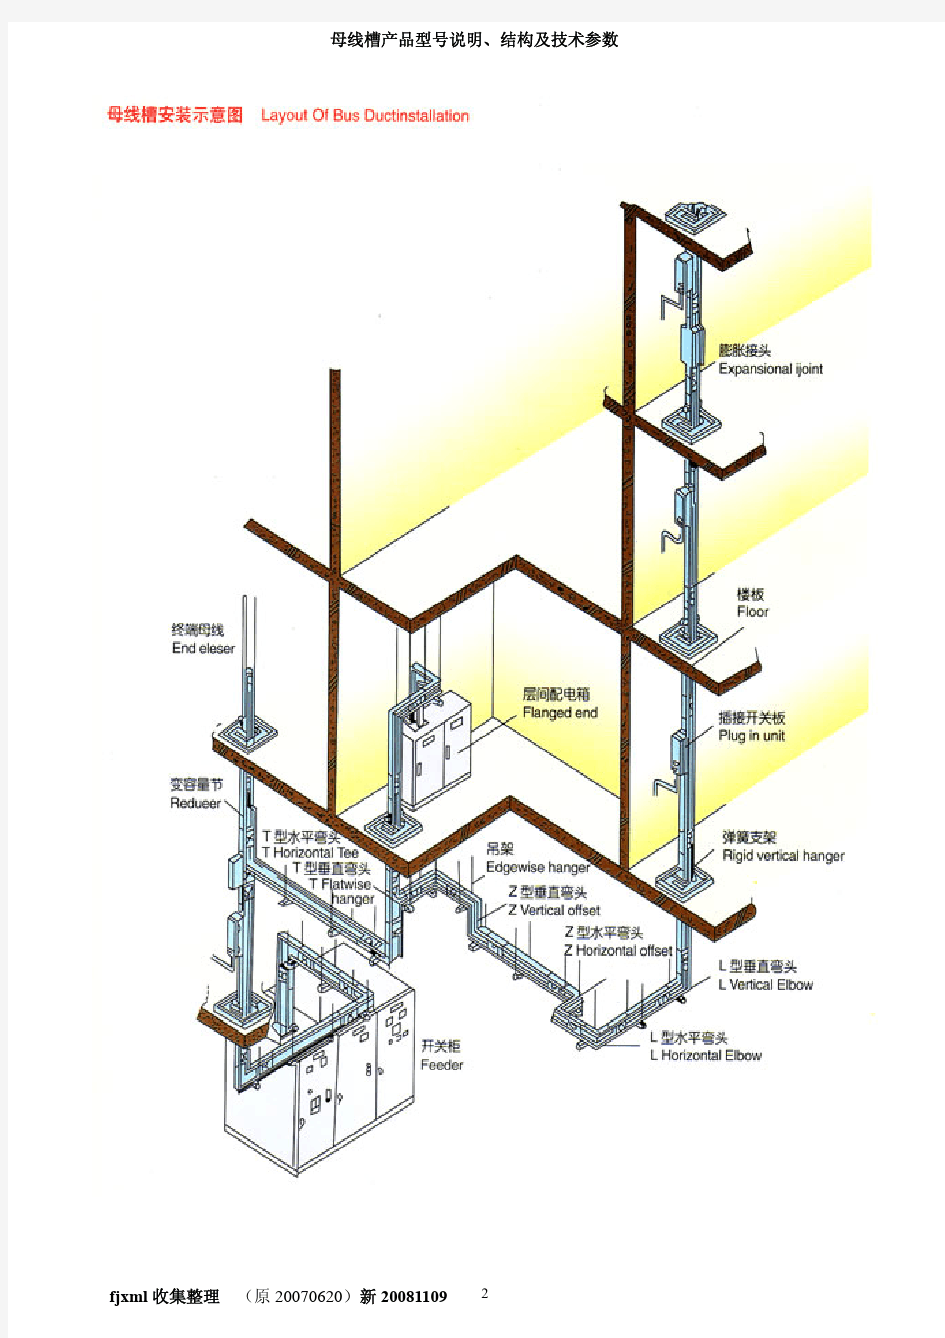 母线槽产品型号说明、结构及技术参数